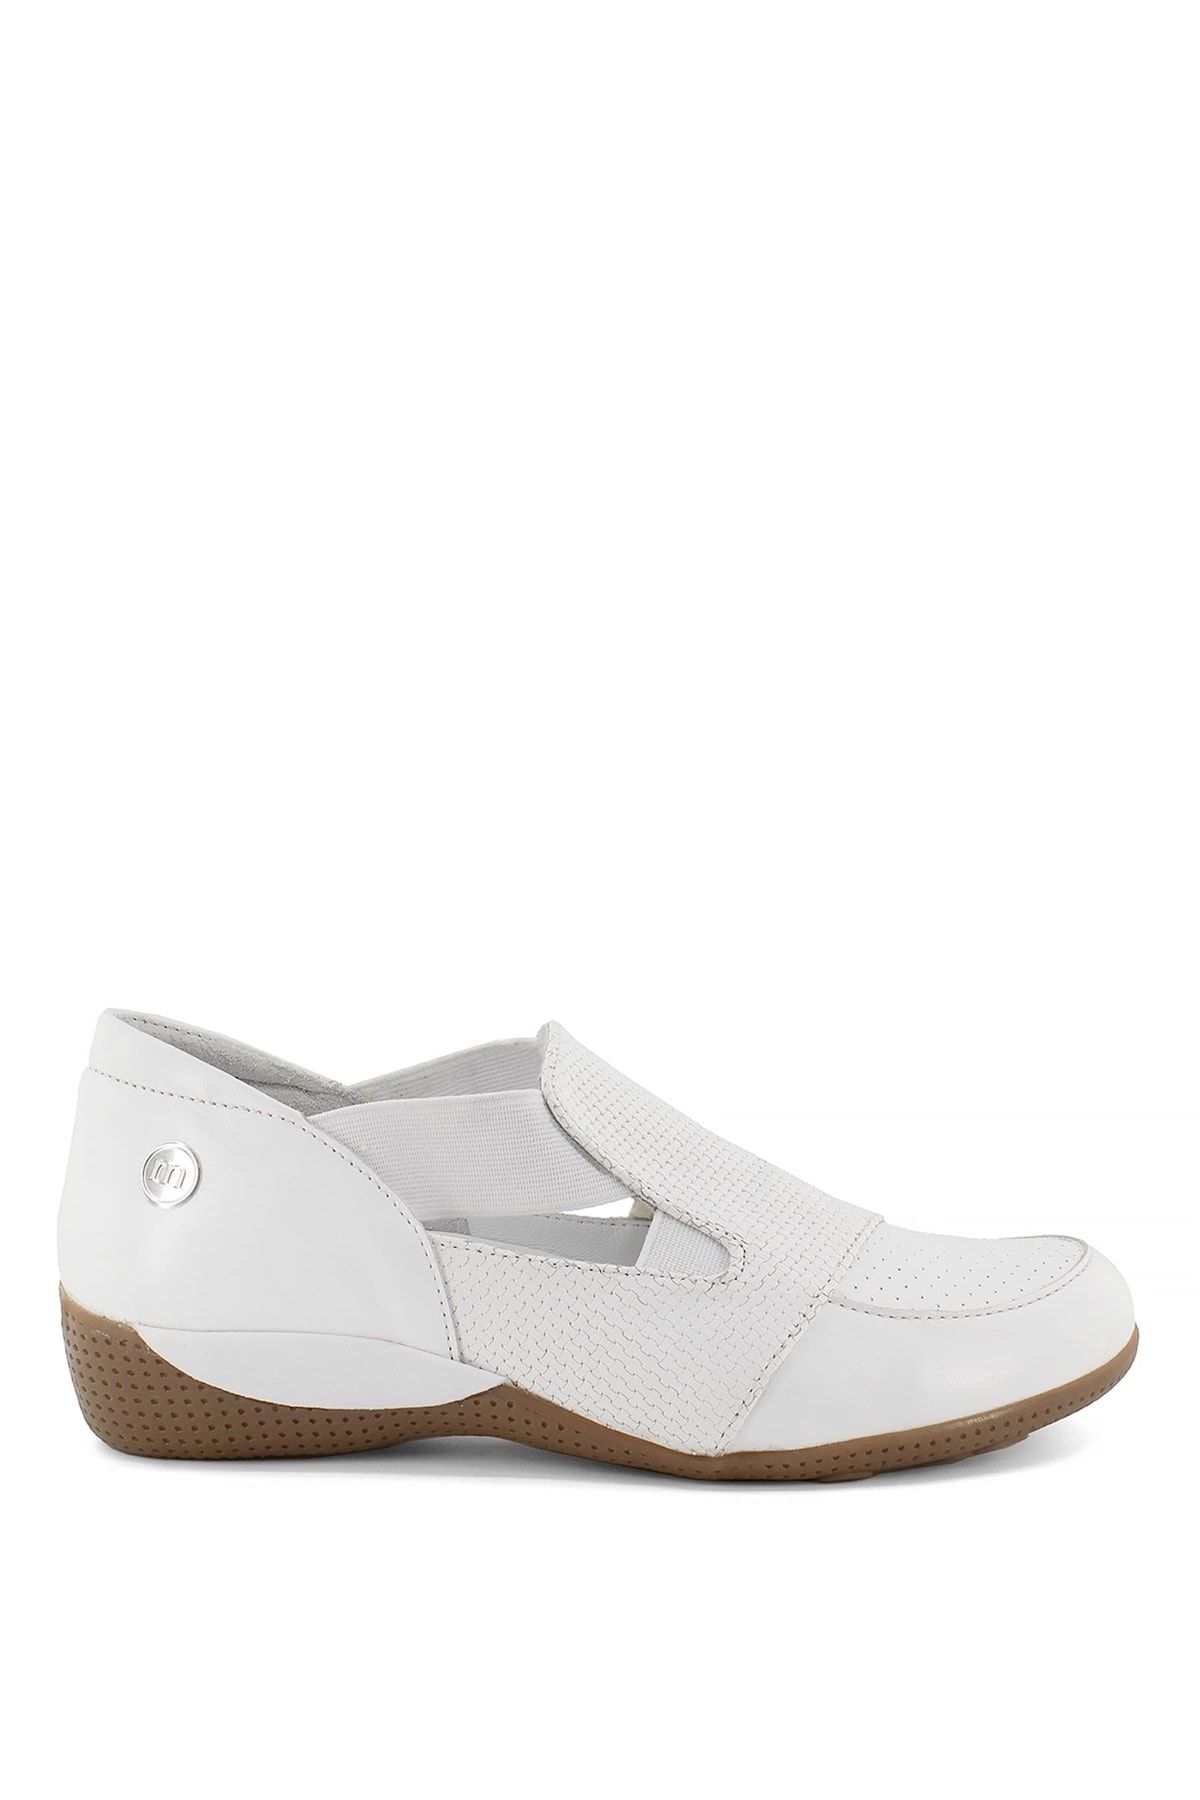 Mammamia D23ya-3170c Kadın Deri Günlük Ayakkabı Beyaz